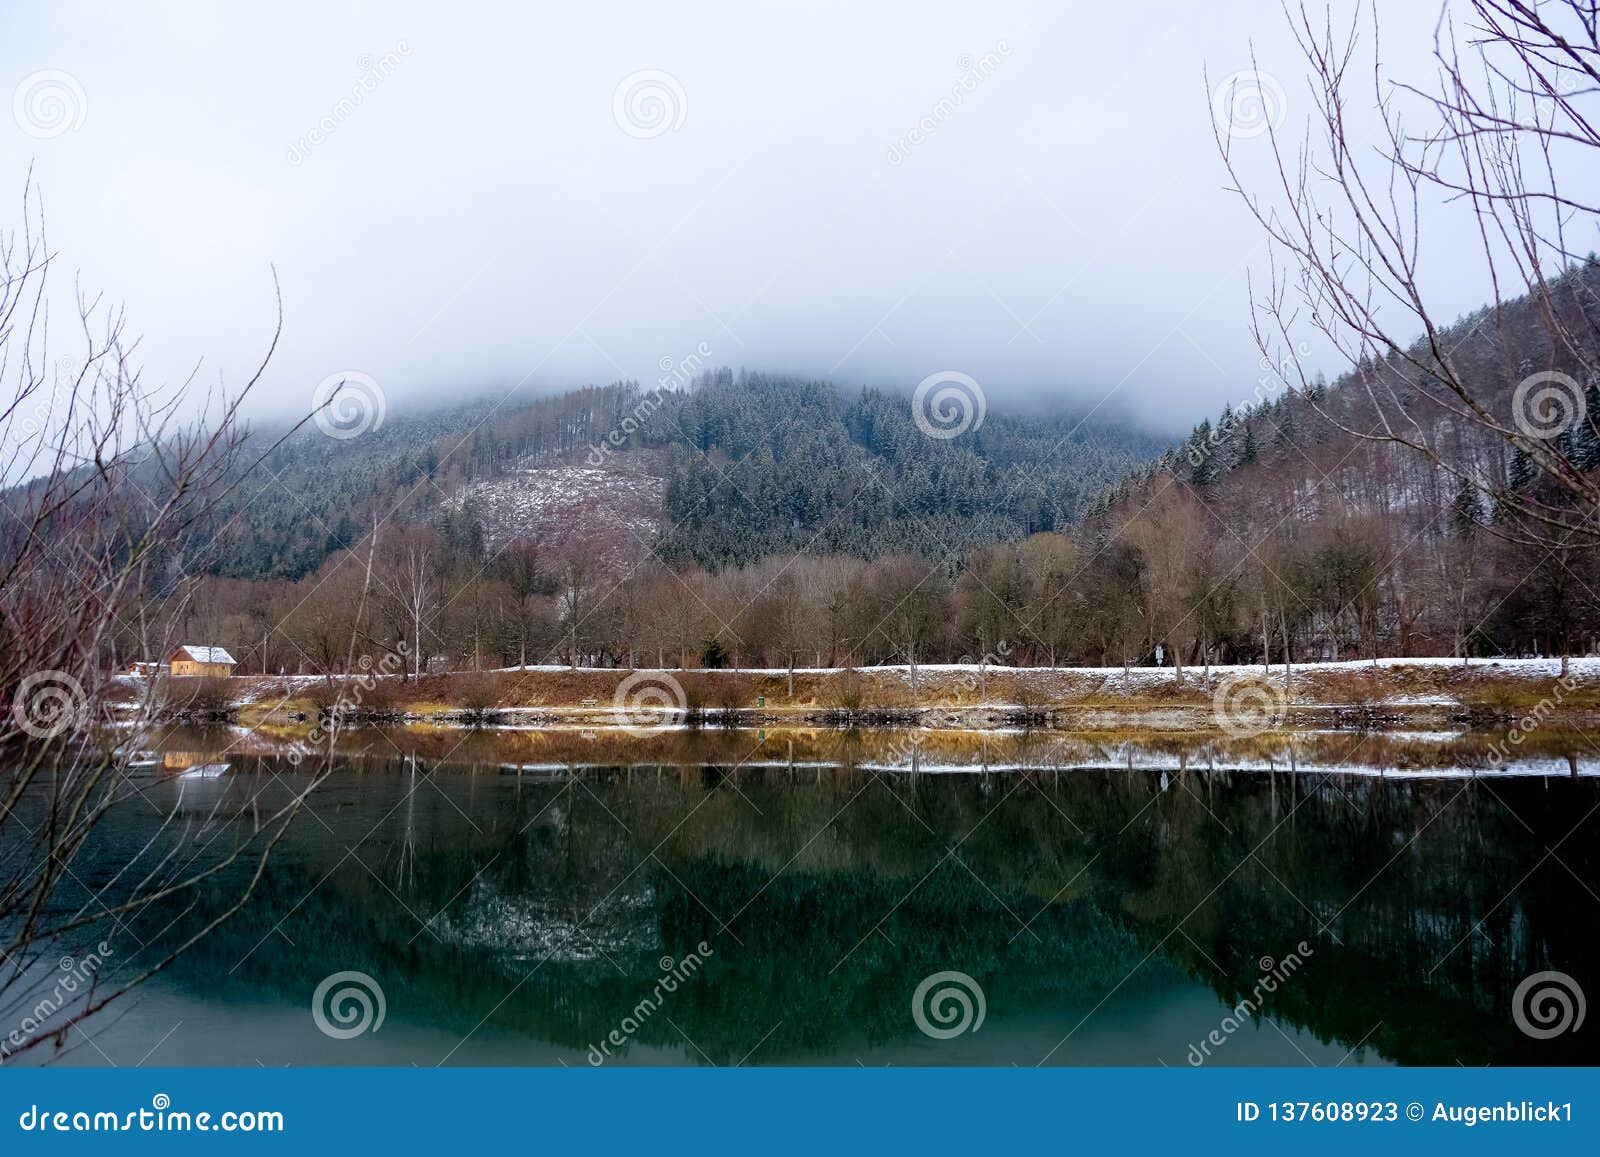 Zimny zima dzień jeziorem. Przy niskimi temperaturami w ciszy podążać piękno natura, robi czasowi wolnemu, znajduje relaks i cieszy się pięknych jasnych zima kolory które odbijają w jeziorze, RÃ¶thelstein, Austria